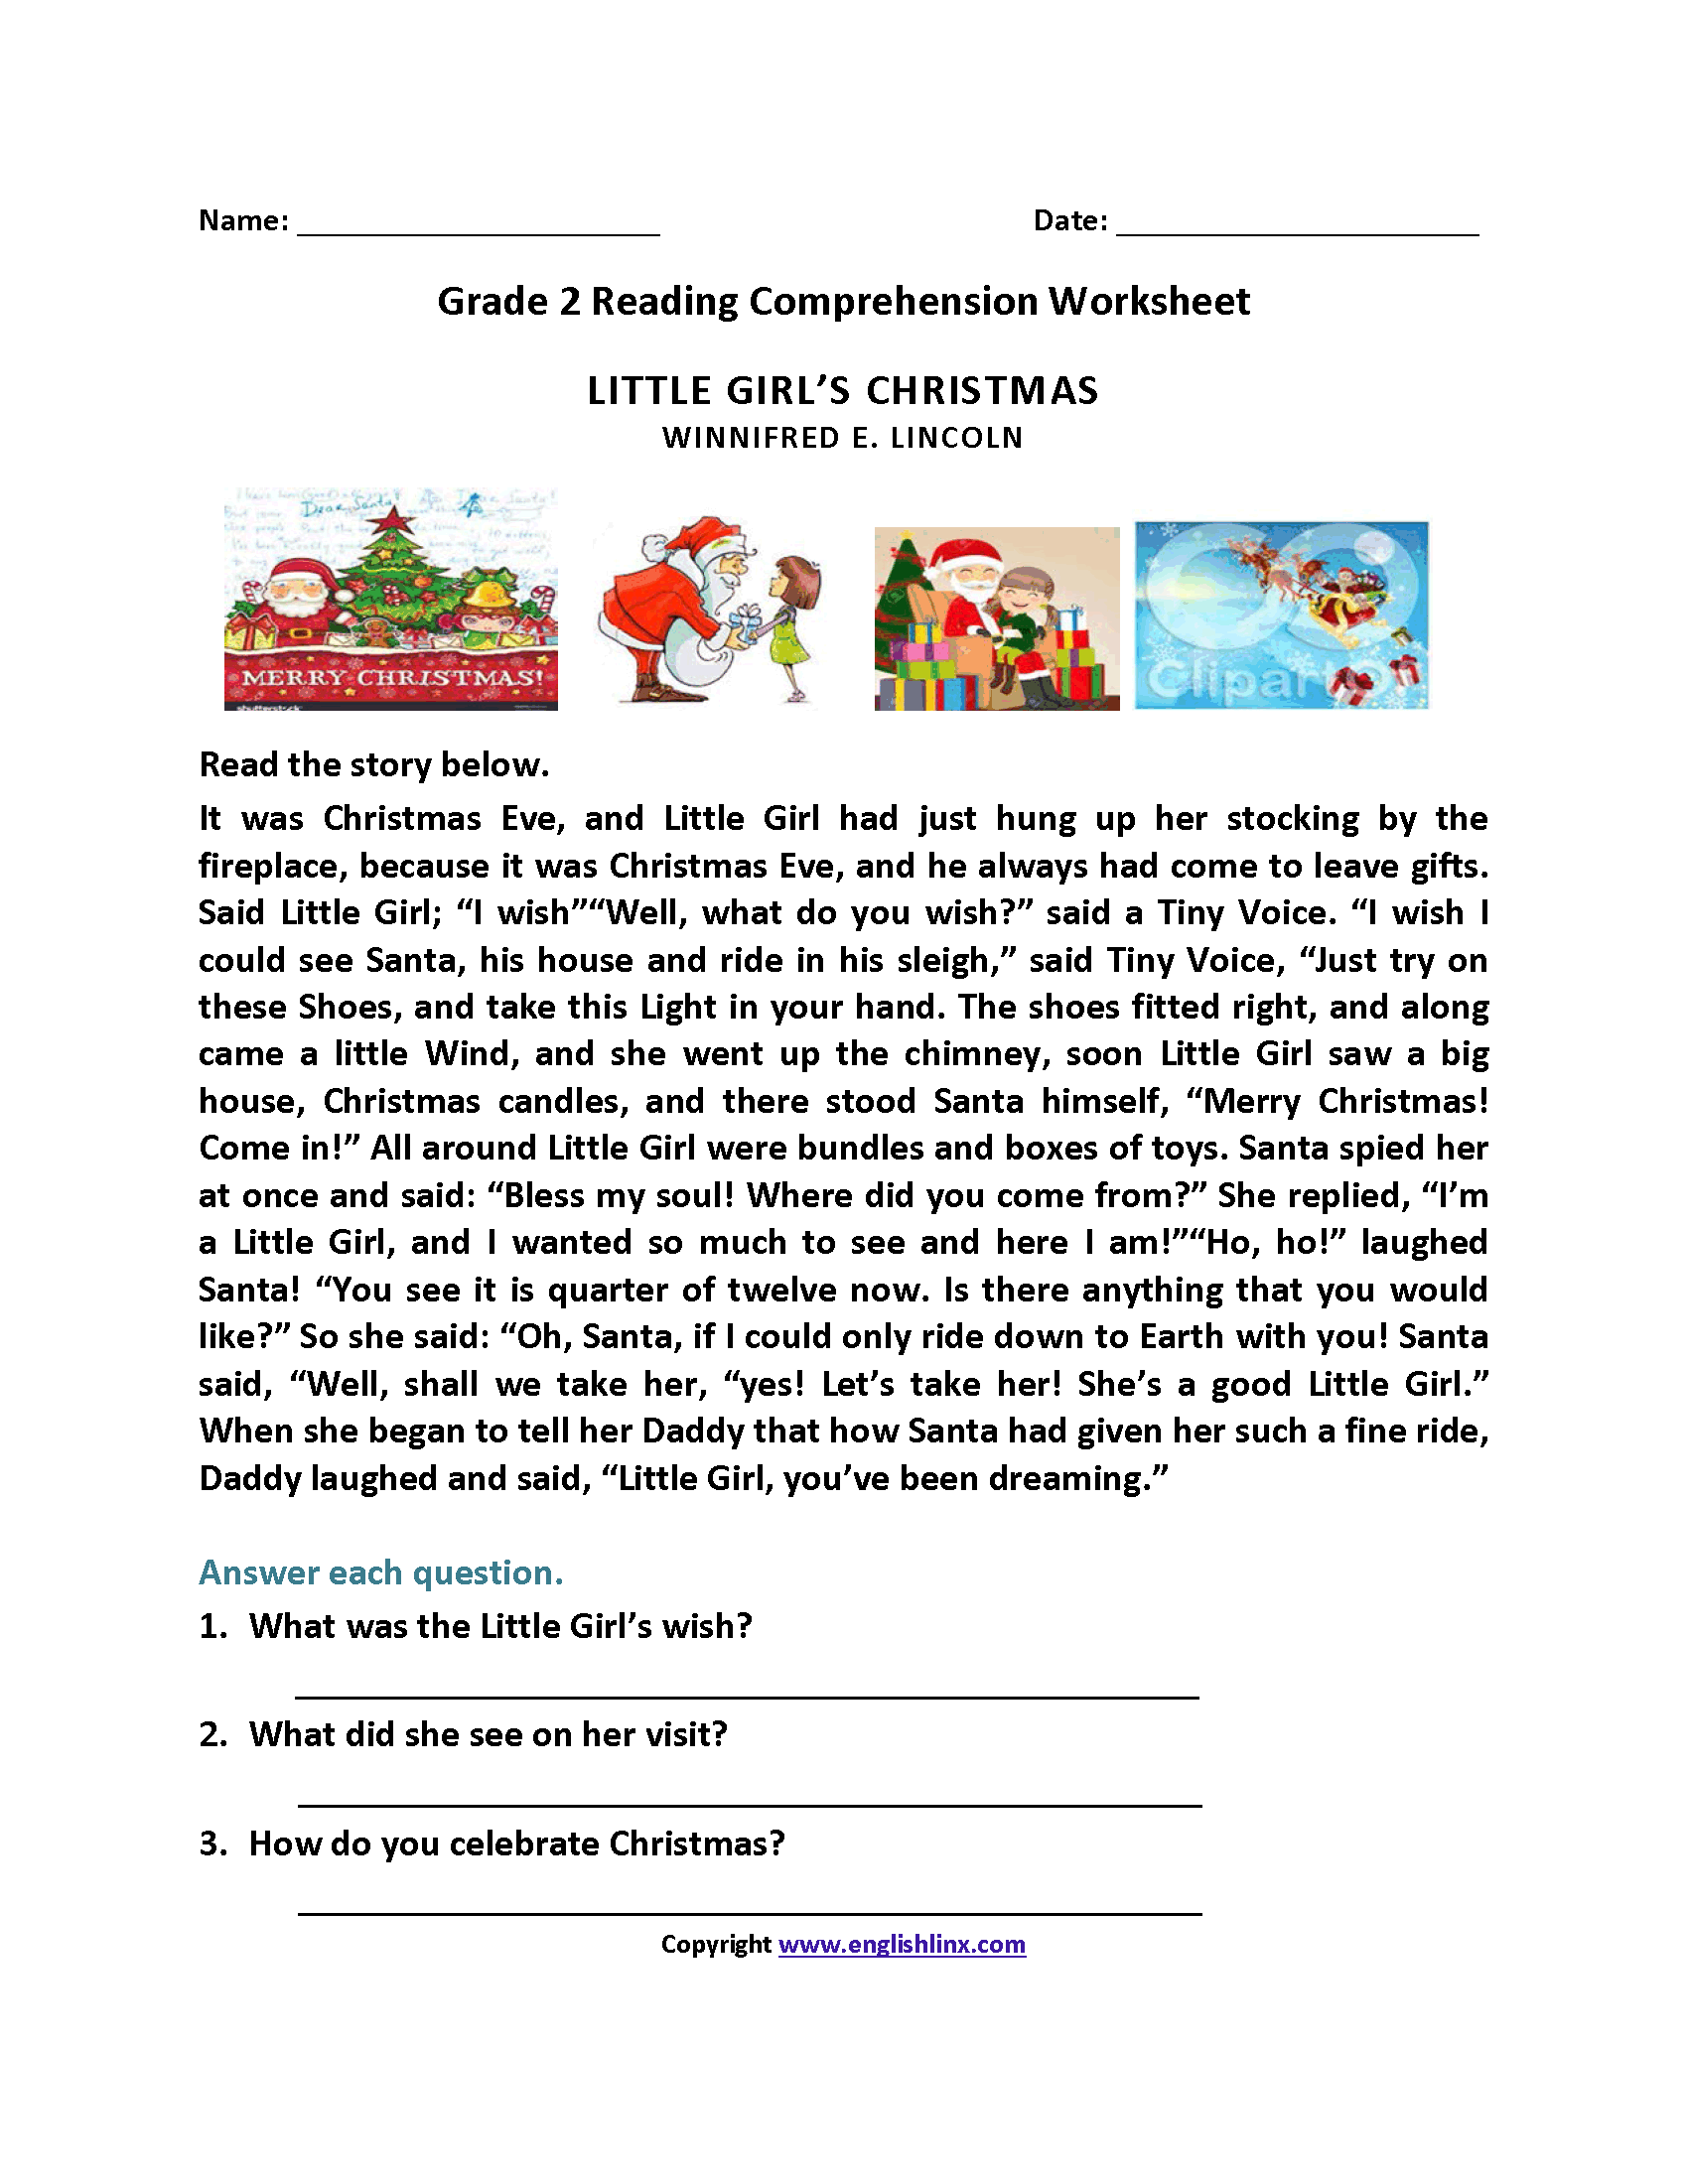 Little Girl's Christmas Second Grade Reading Worksheets